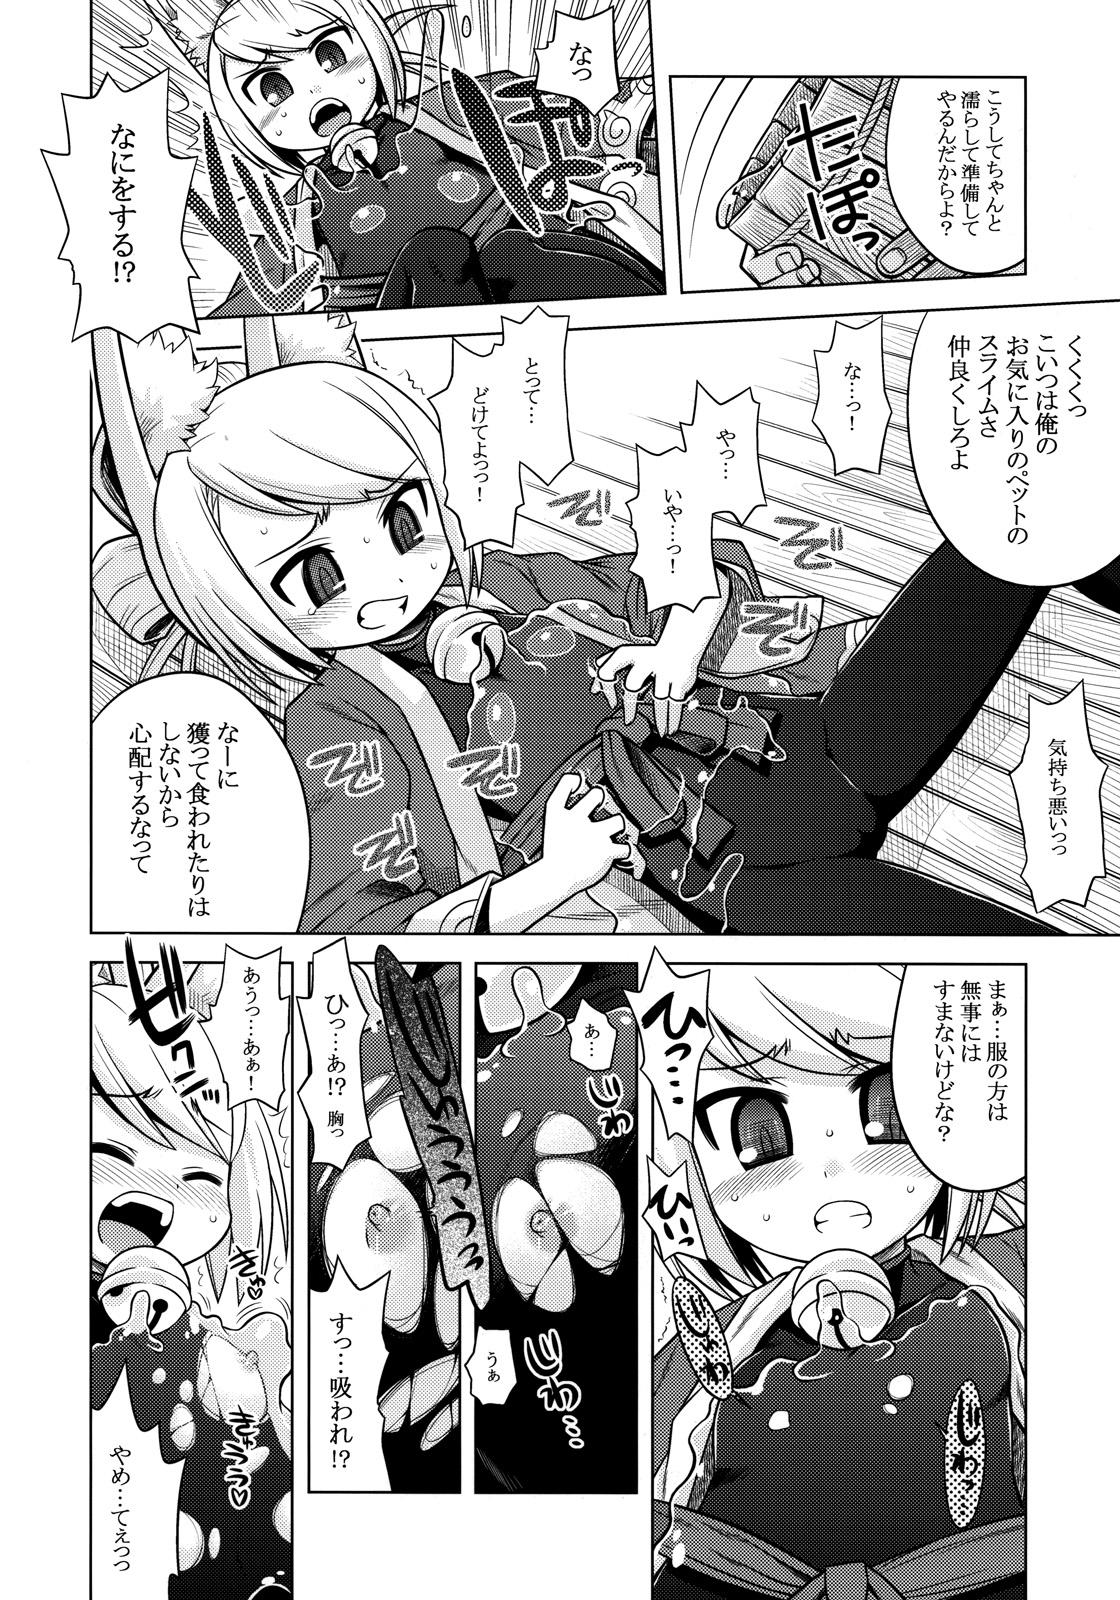 Pretty Nanadora no Anone 2 - 7th dragon Moaning - Page 6